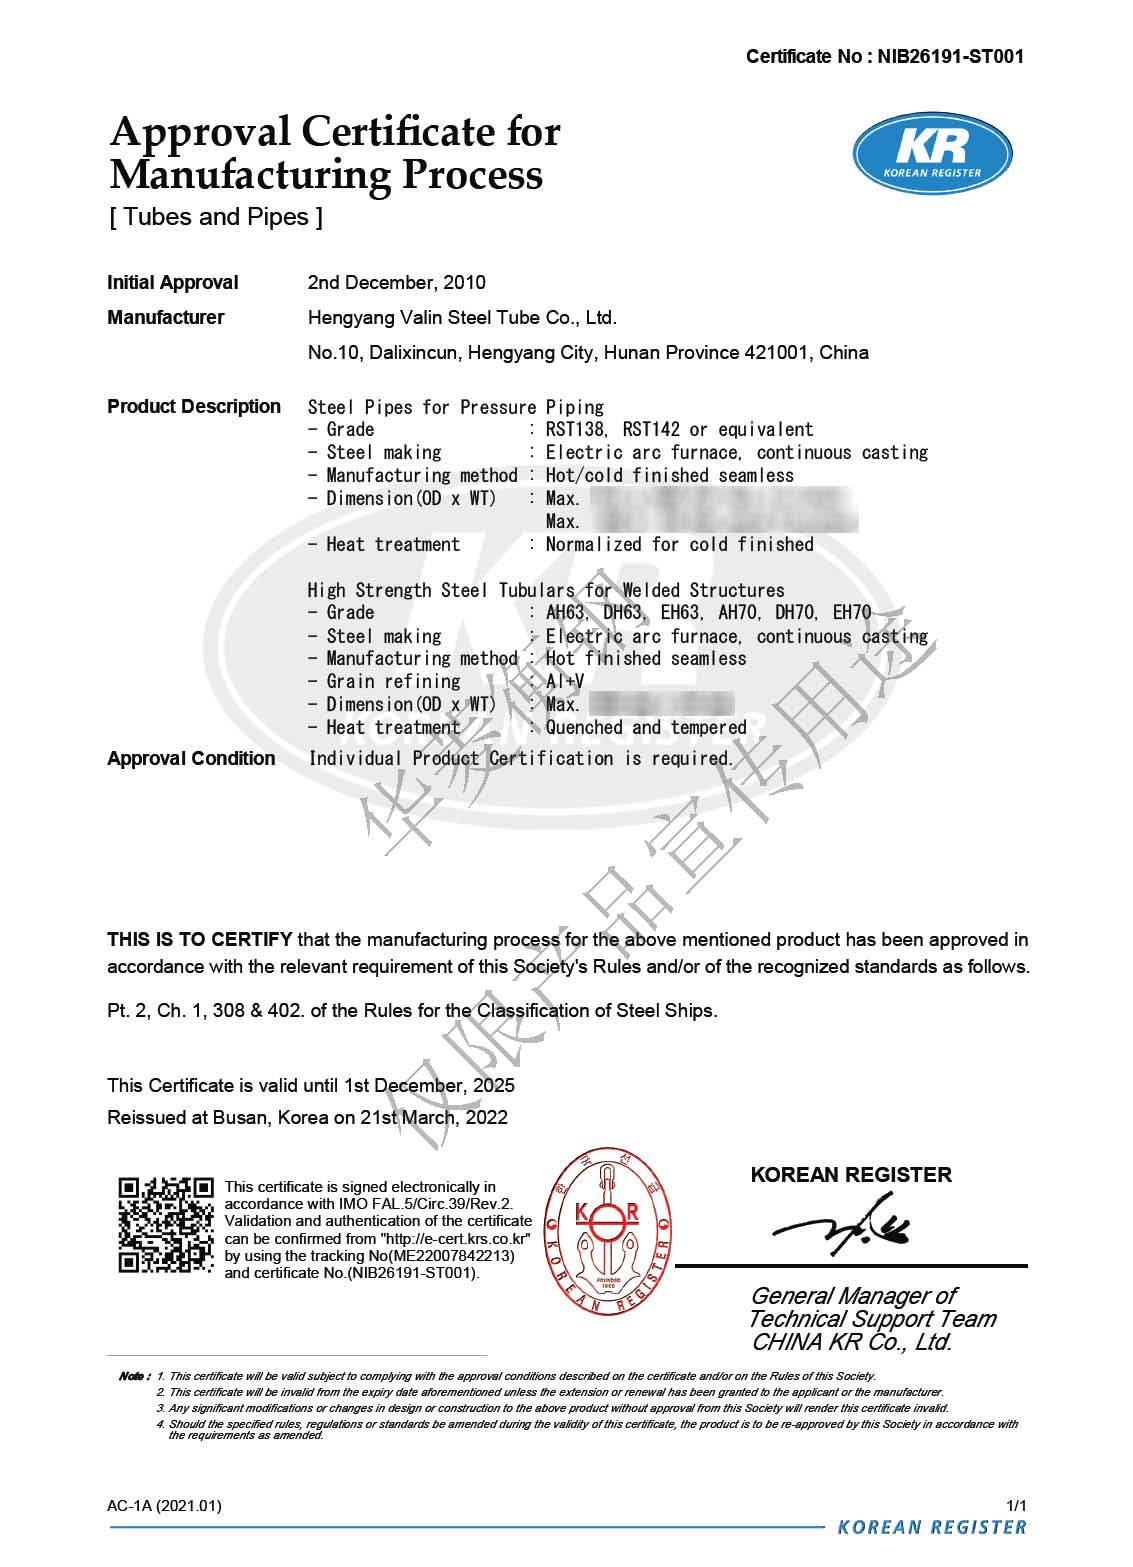 韩国KR船级社证书